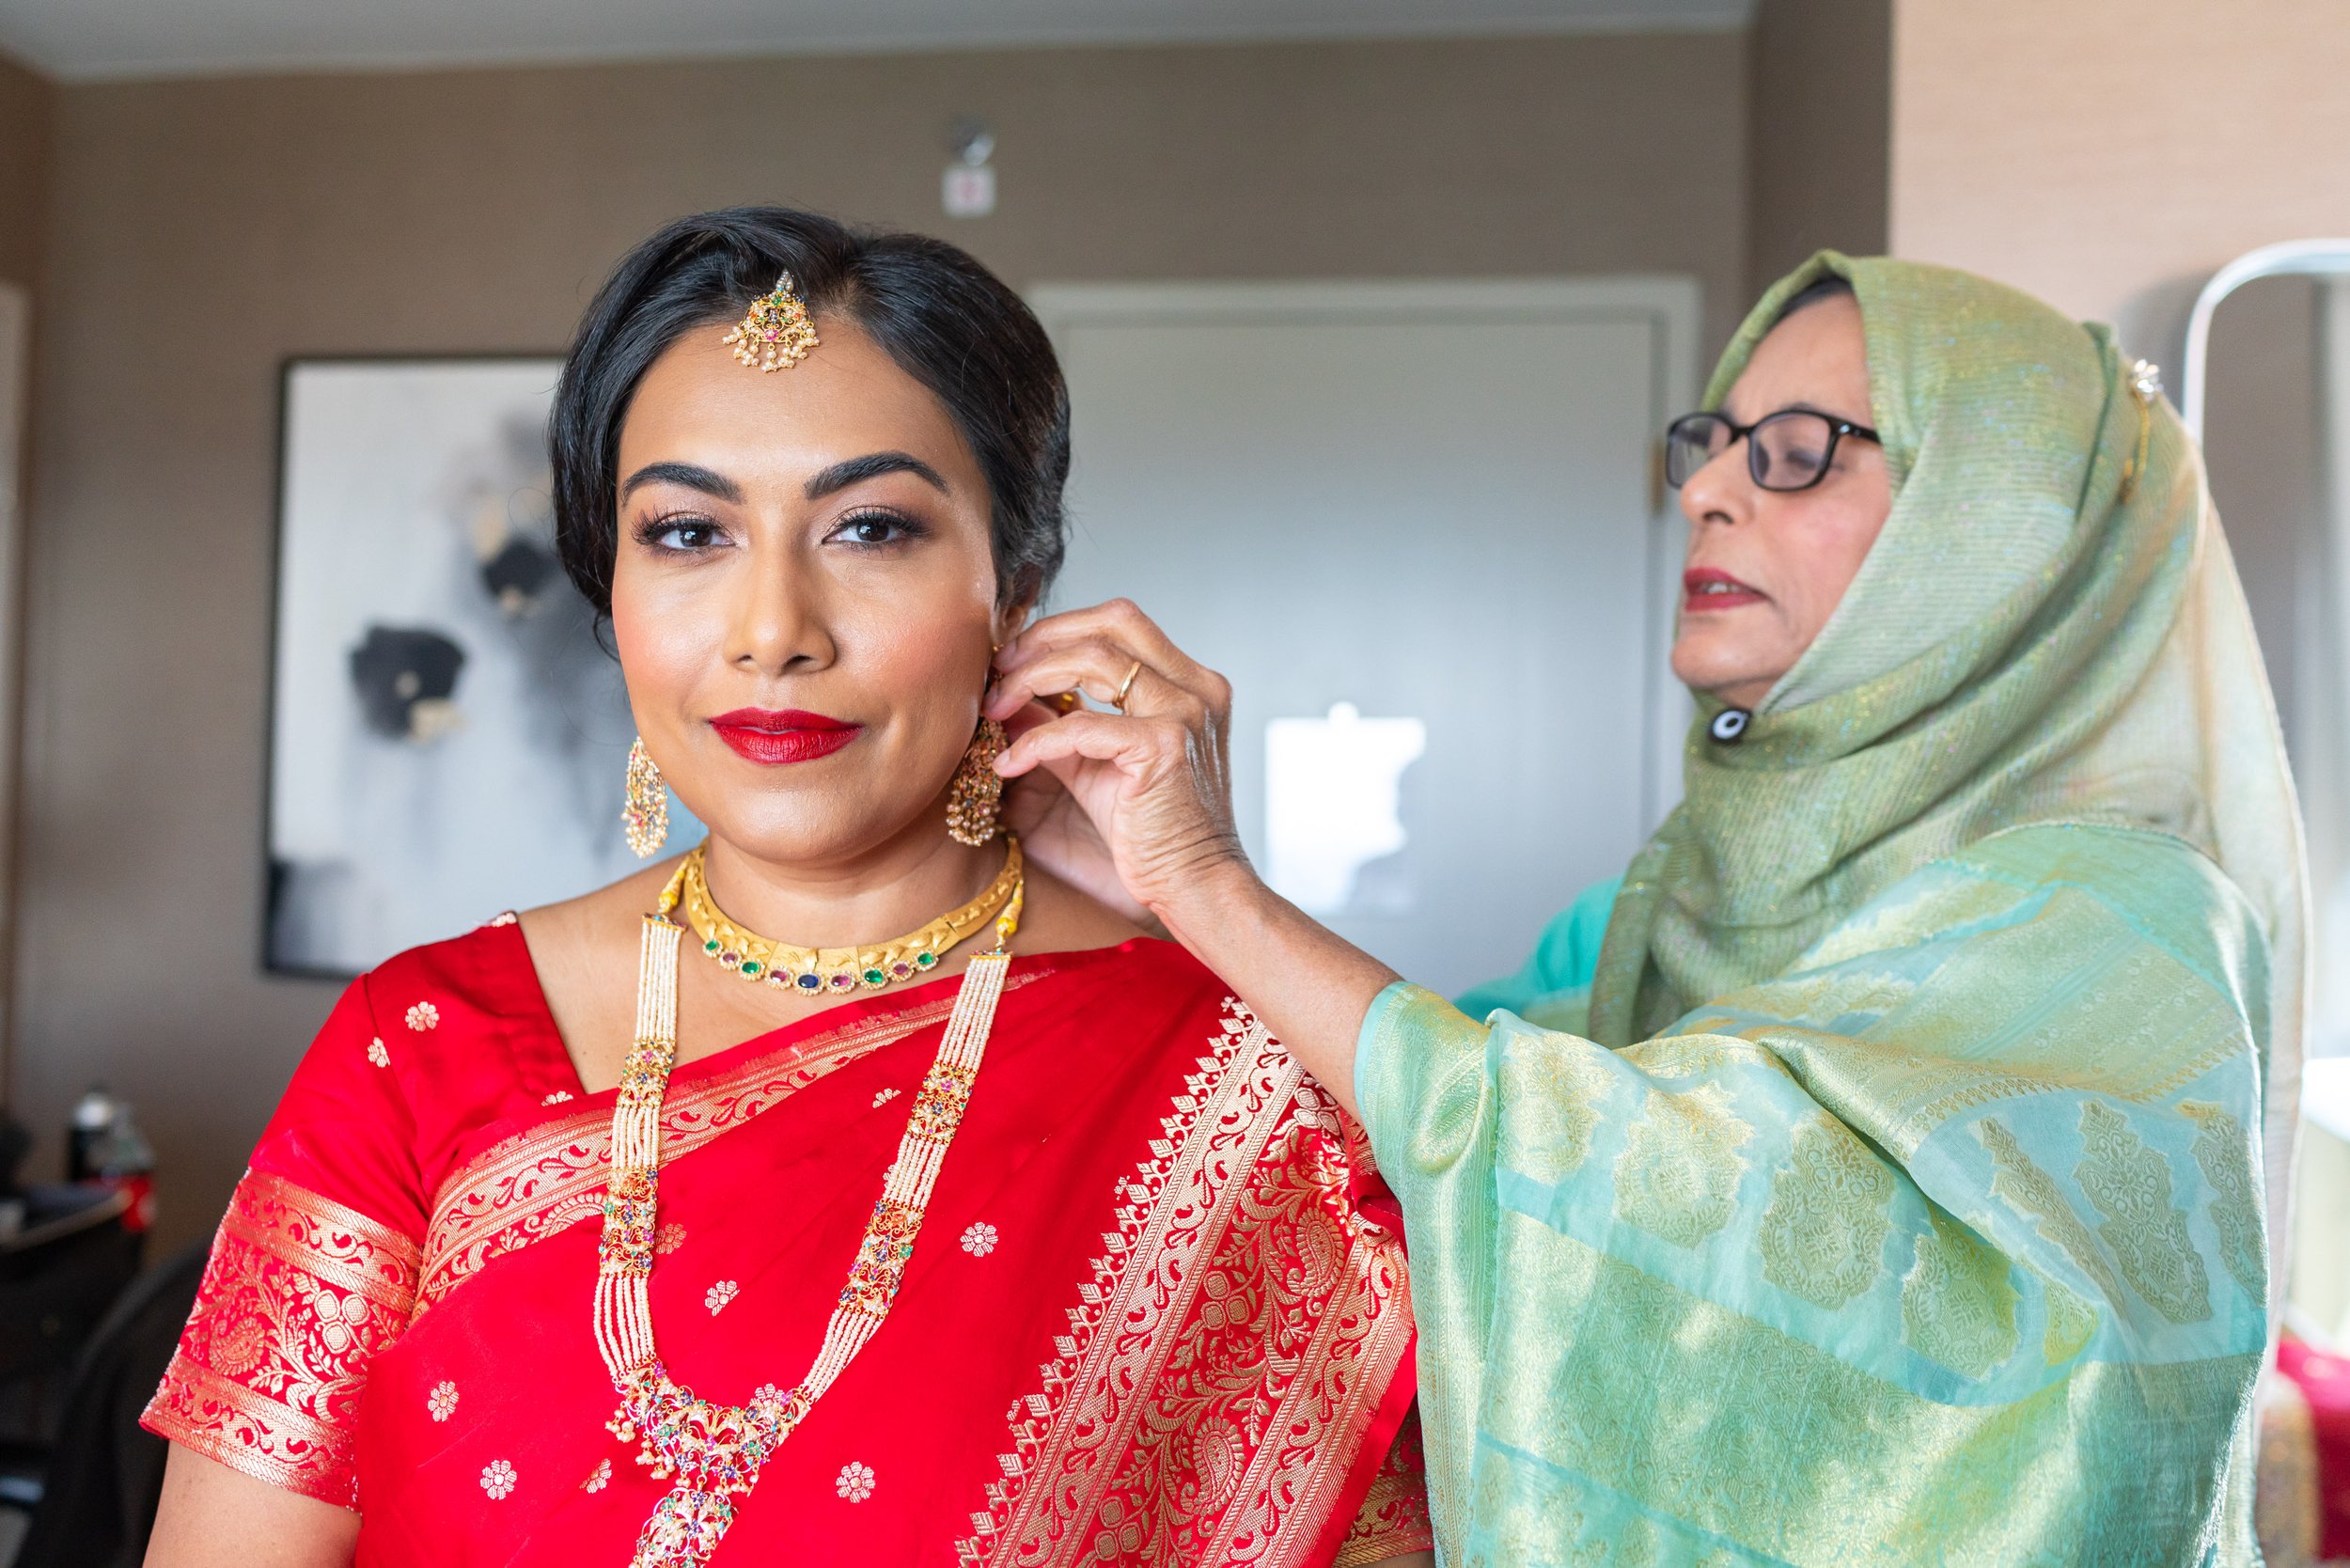 Aunt putting earrings on Indian bride at Hyatt regency Dulles in virginia